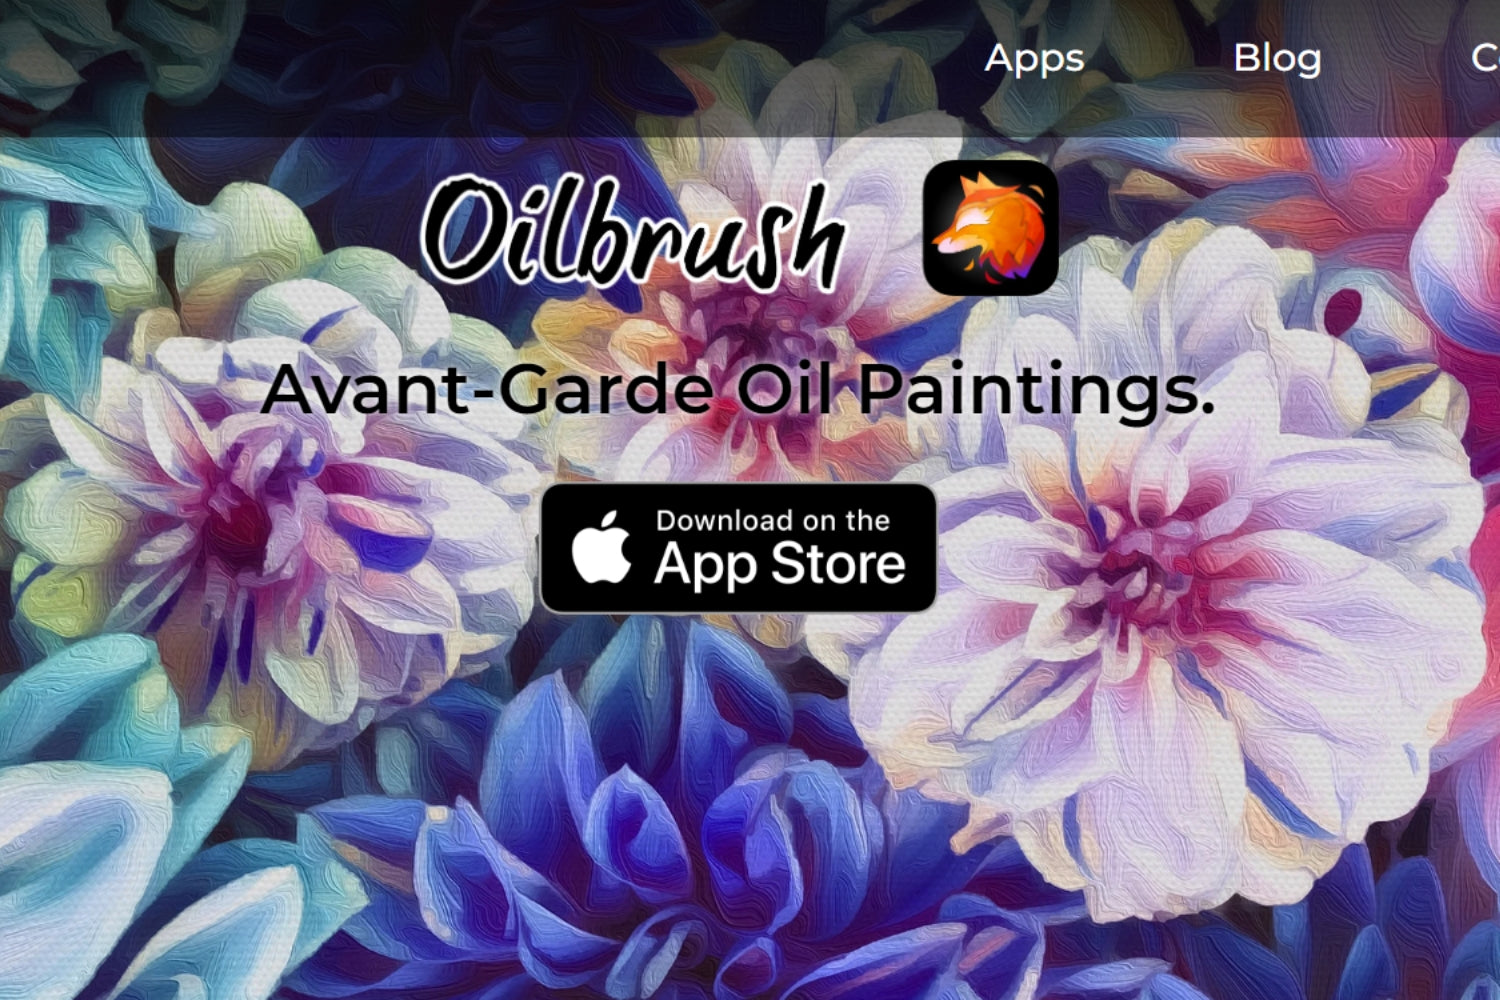 The interface of Oil brush App website